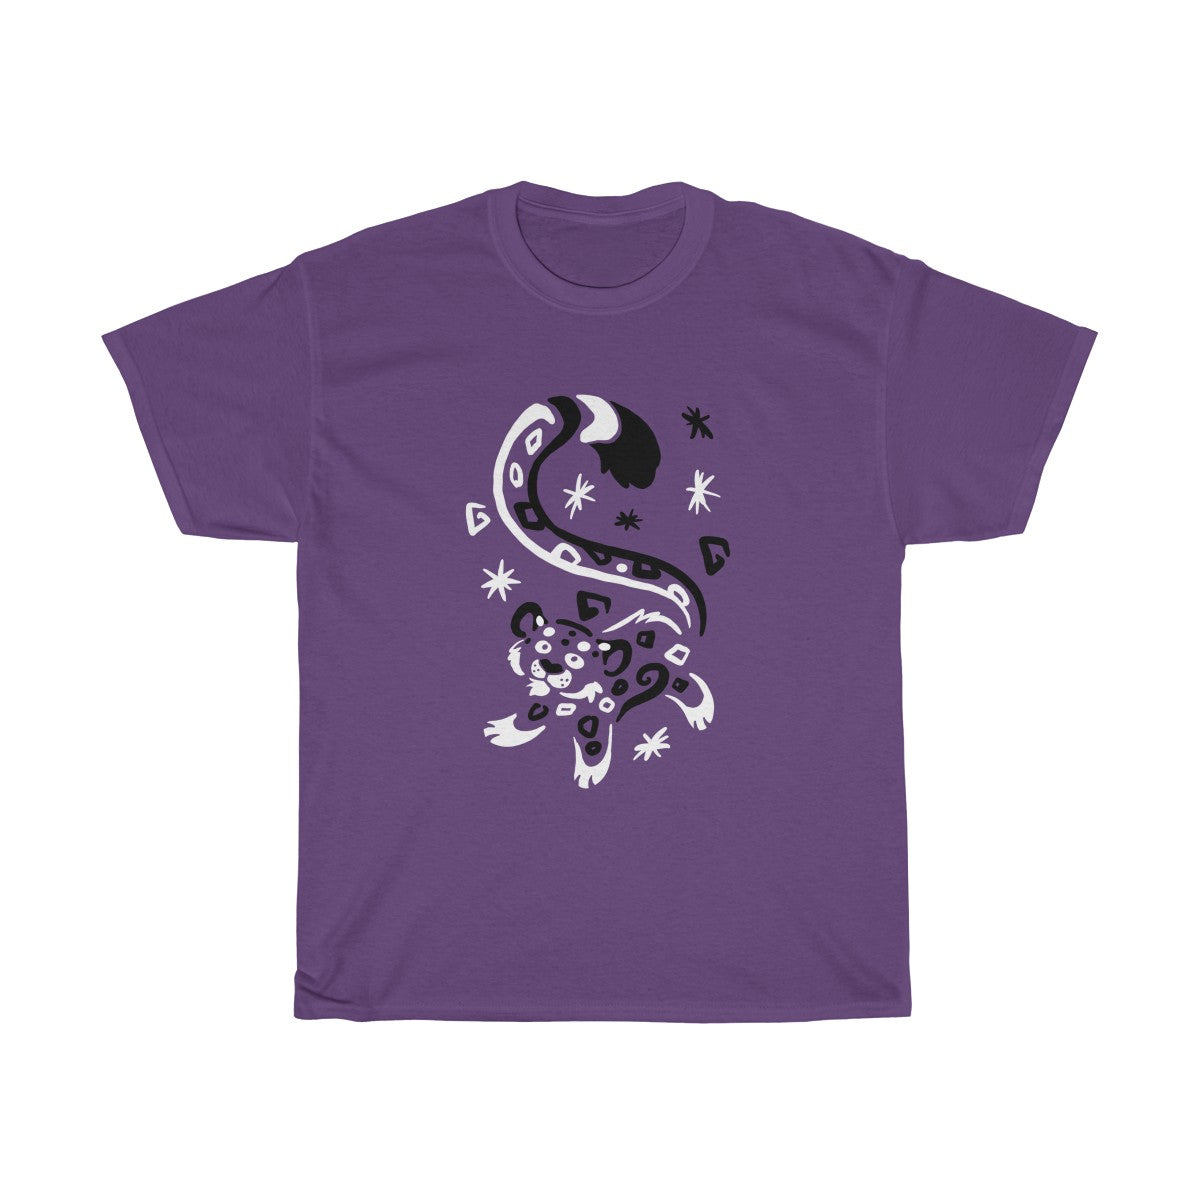 Sneps & Snow - T-Shirt T-Shirt Dire Creatures Purple S 